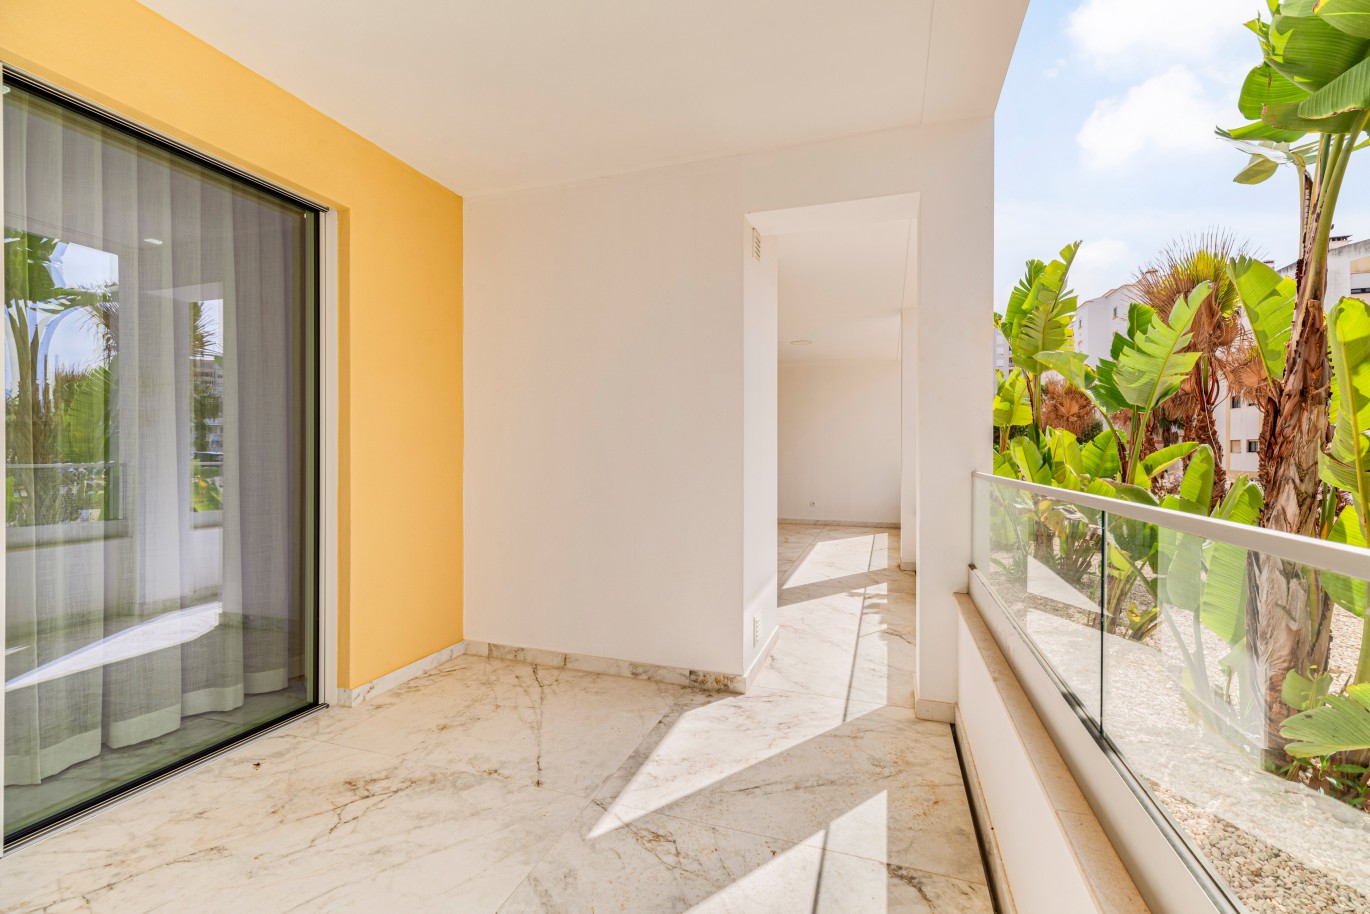 Apartamento, com terraço, para venda, em Lagos, Algarve_238453